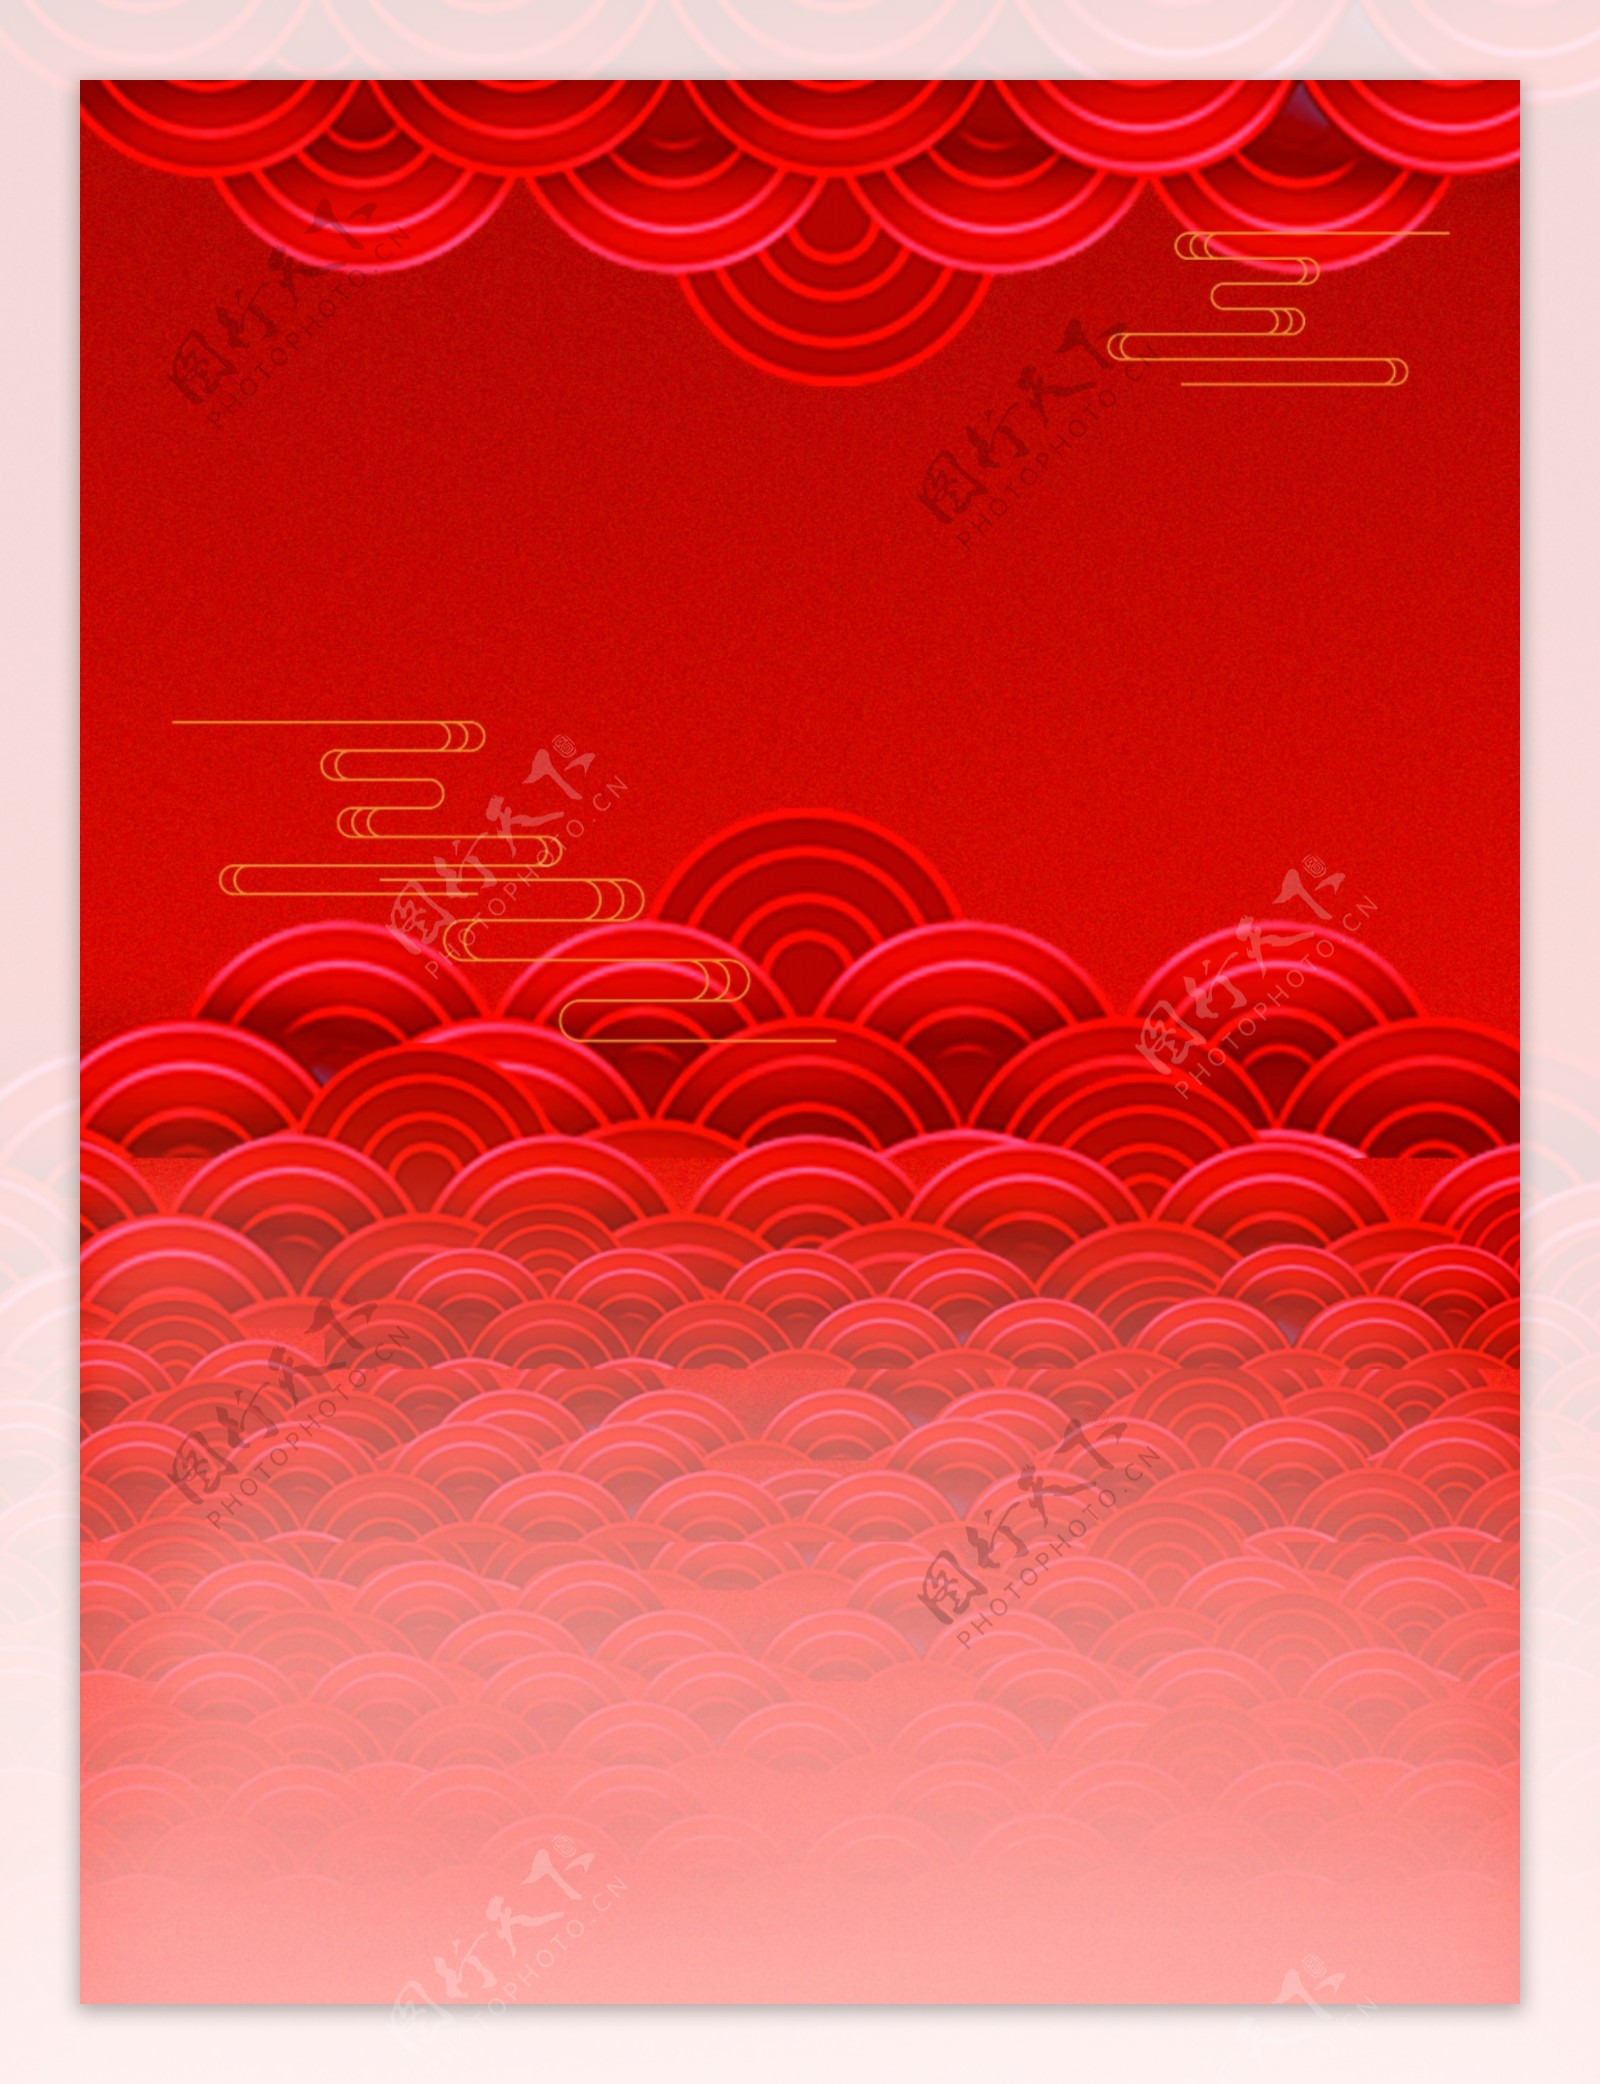 原创红色喜中国风云纹波浪剪纸背景元素